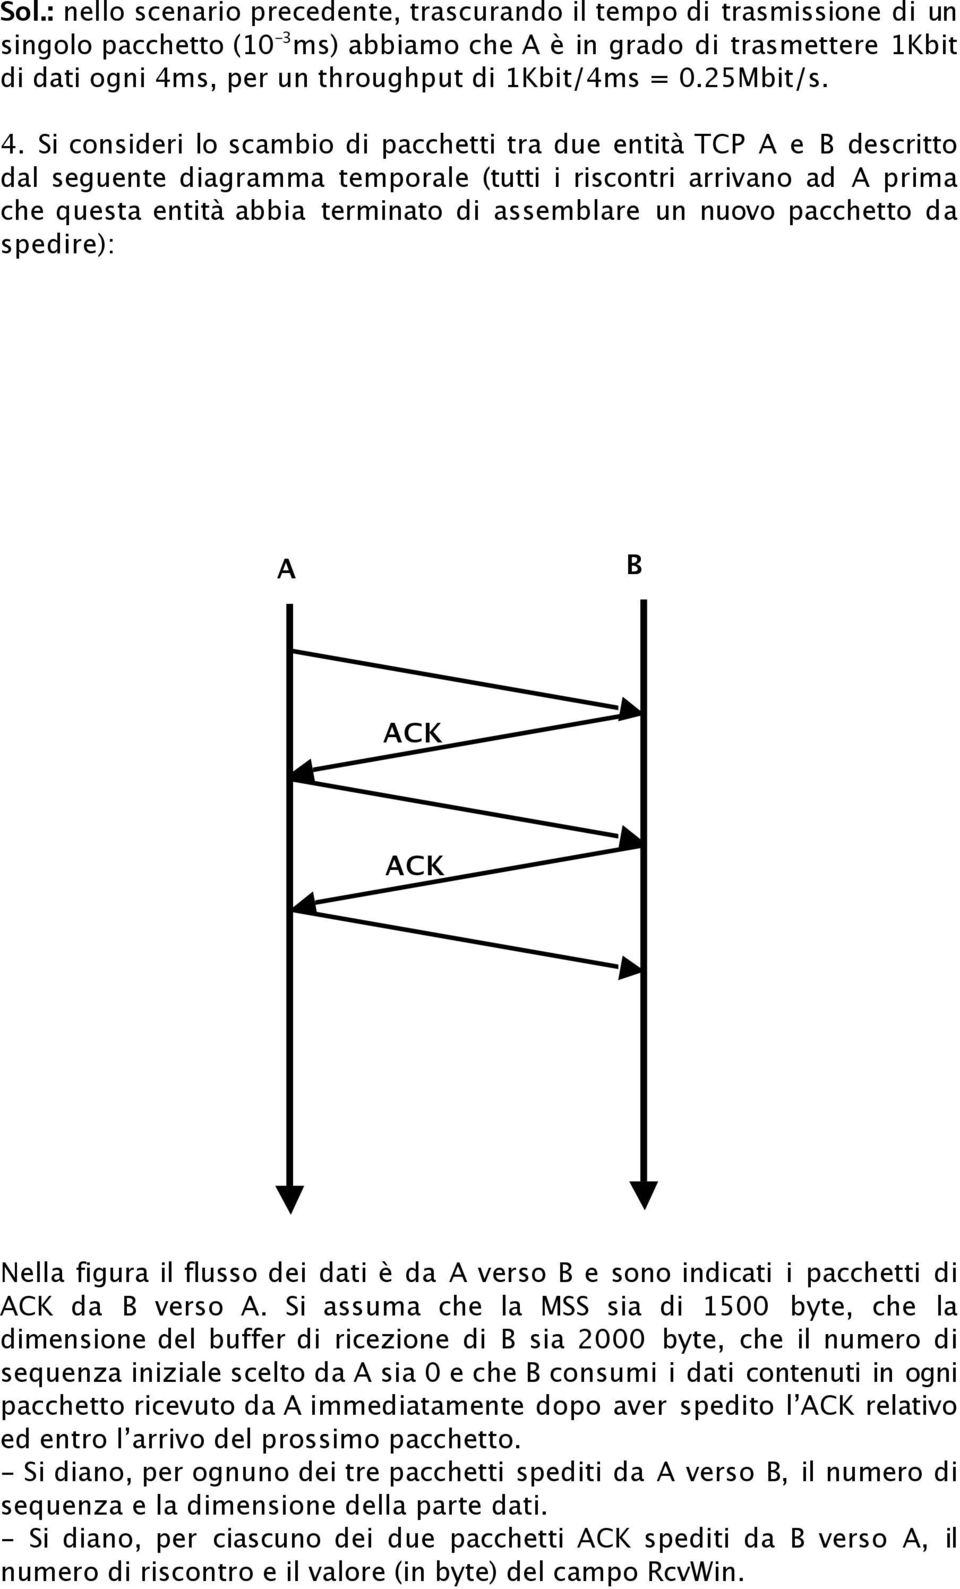 Si consideri lo scambio di pacchetti tra due entità TCP A e B descritto dal seguente diagramma temporale (tutti i riscontri arrivano ad A prima che questa entità abbia terminato di assemblare un